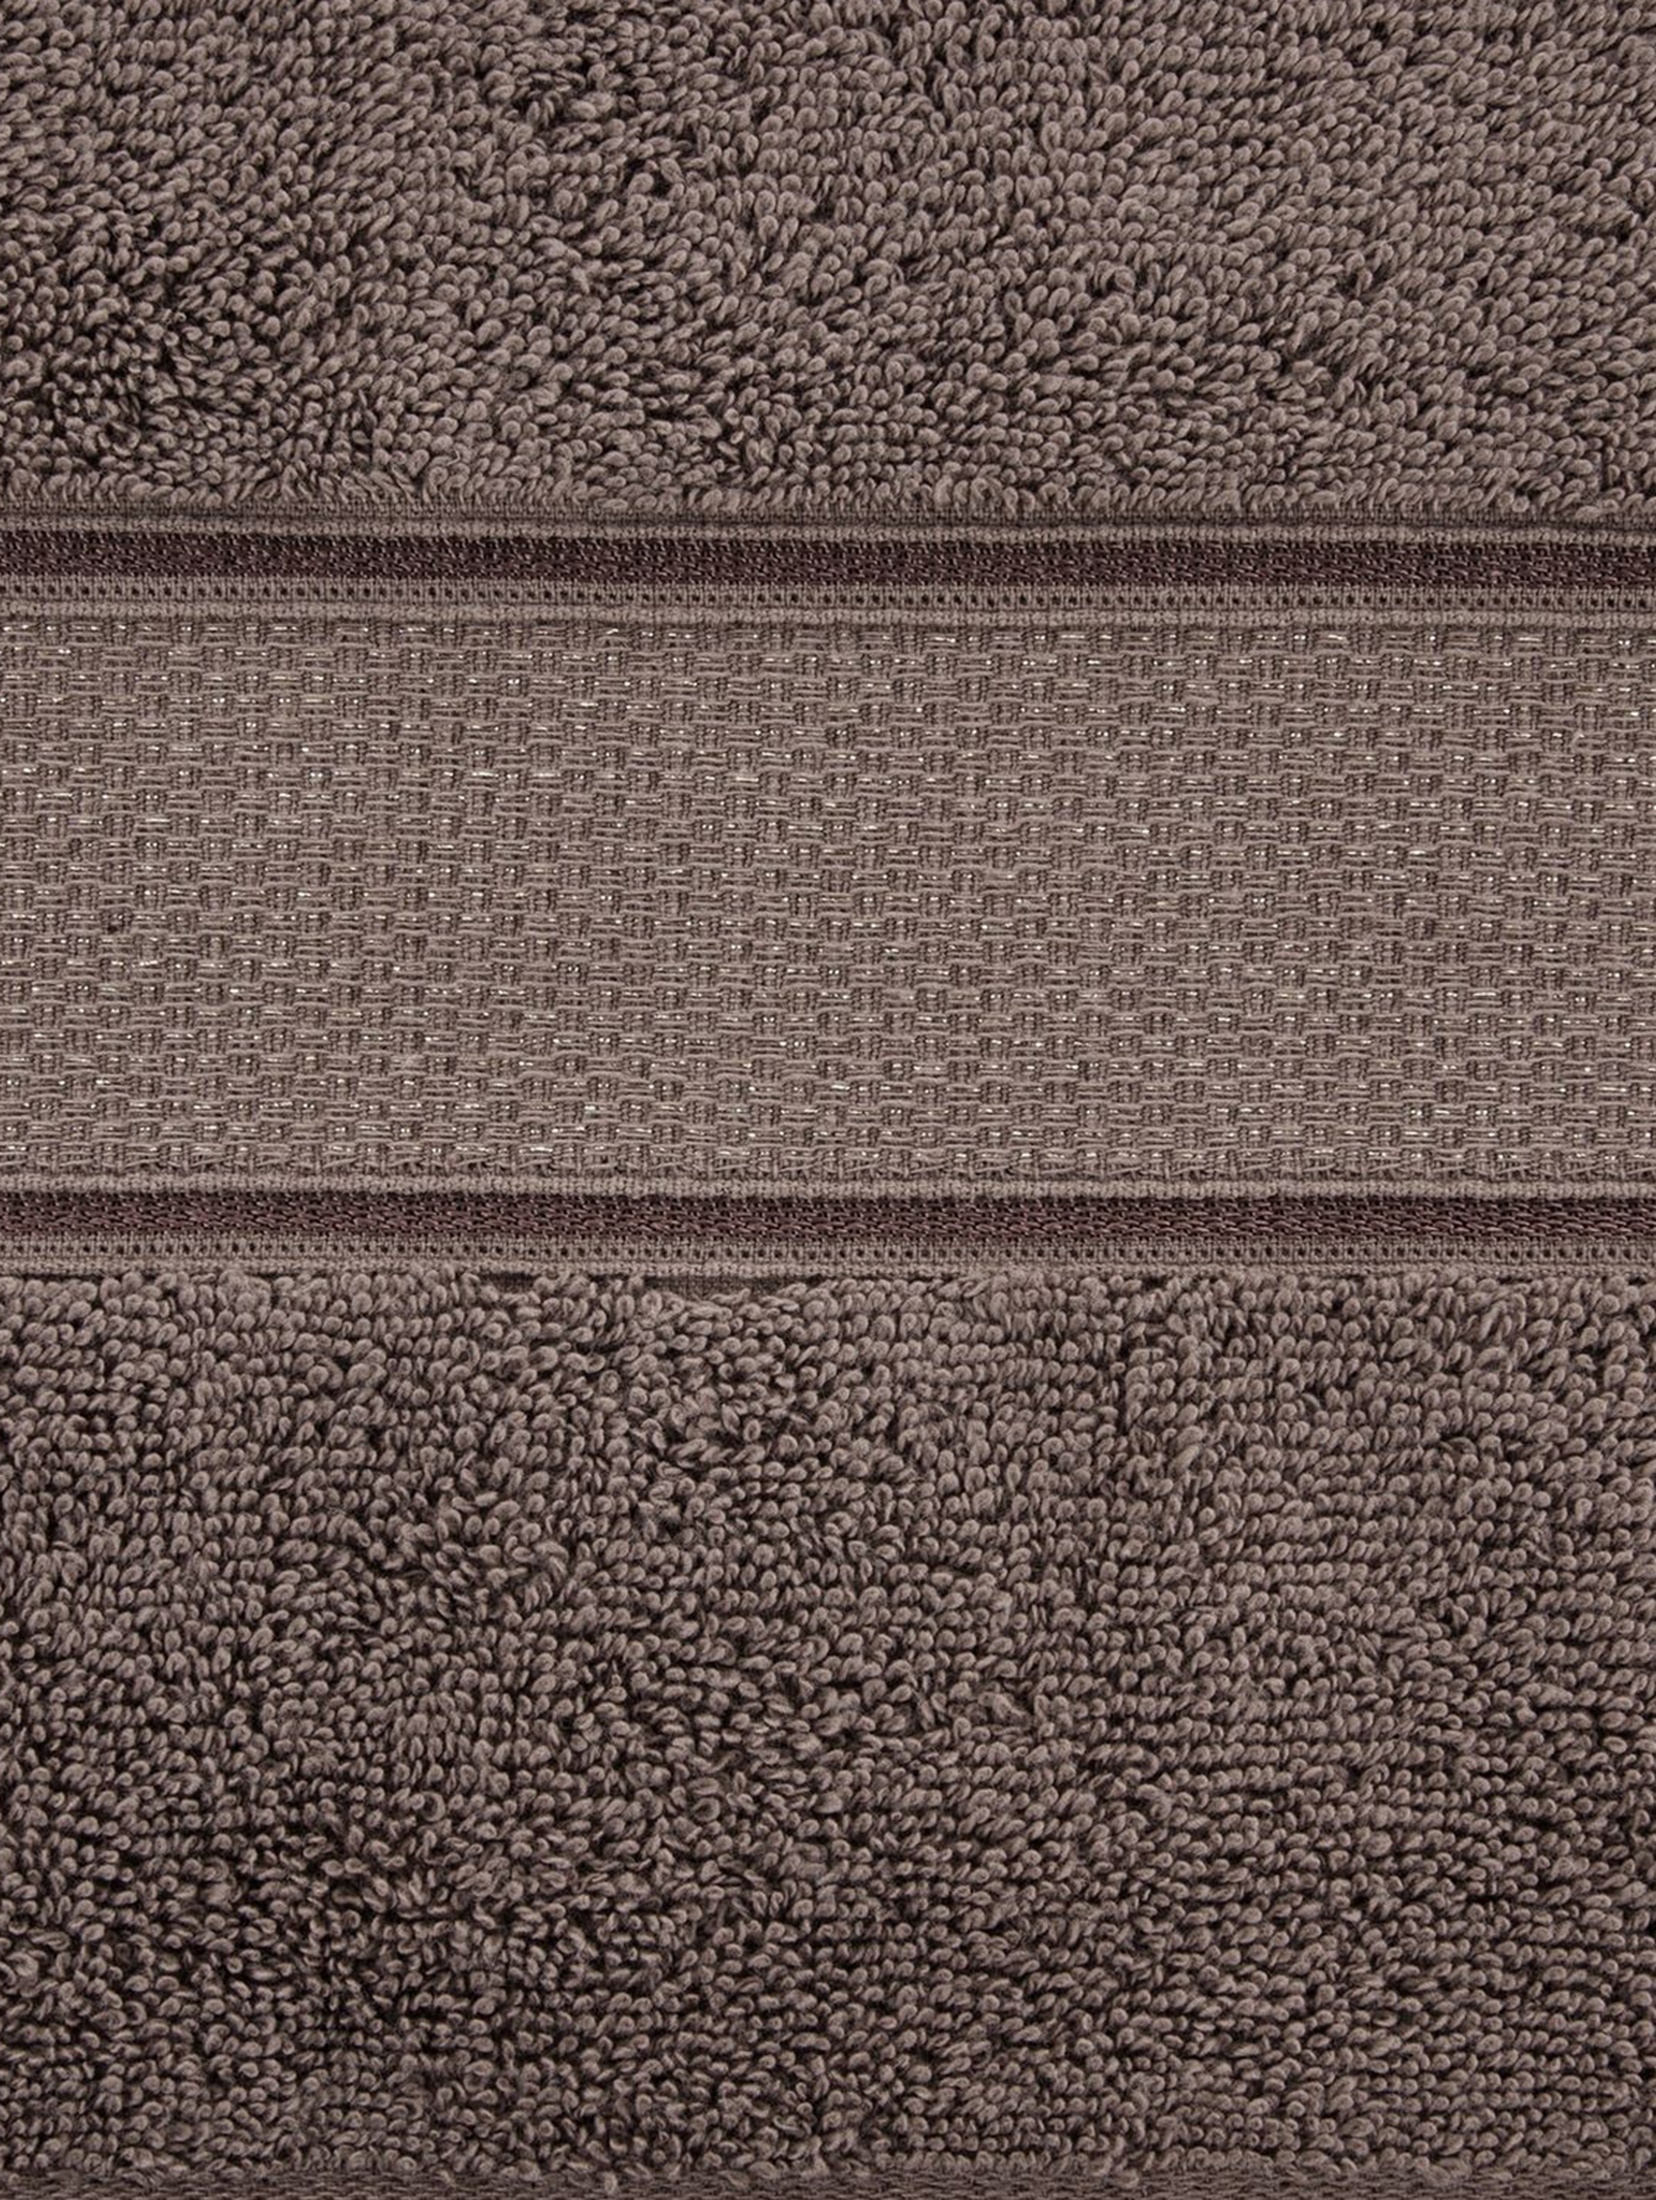 Ręcznik kąpielowy LIANA z bawełny 70x140 cm jasnobrązowy